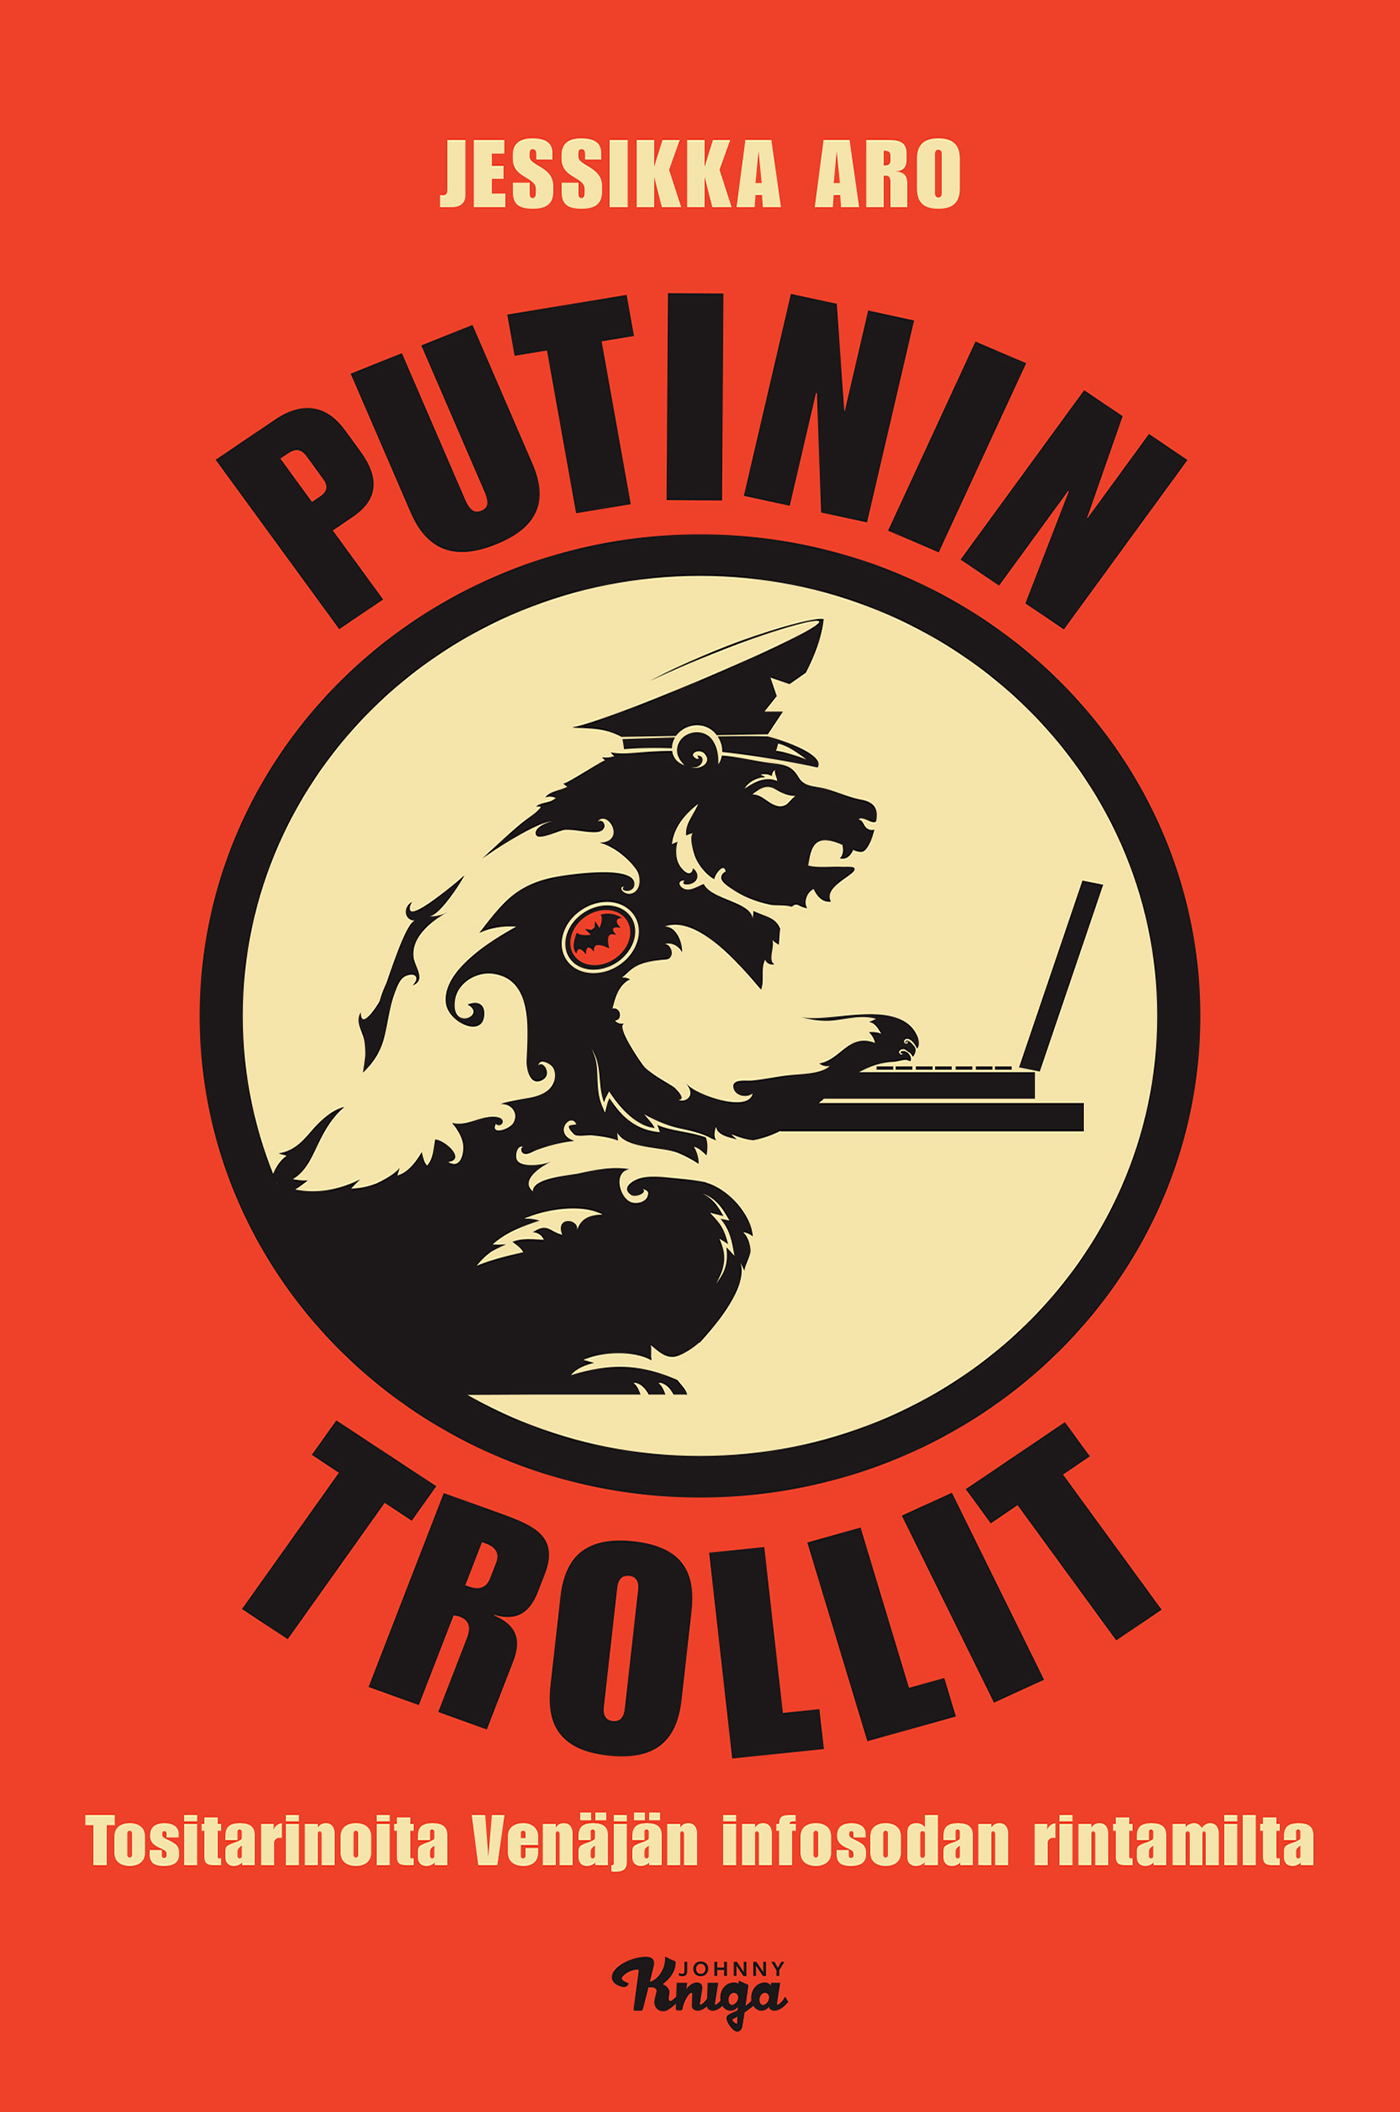 Aro, Jessikka - Putinin trollit: Tositarinoita Venäjän infosodan rintamilta, ebook